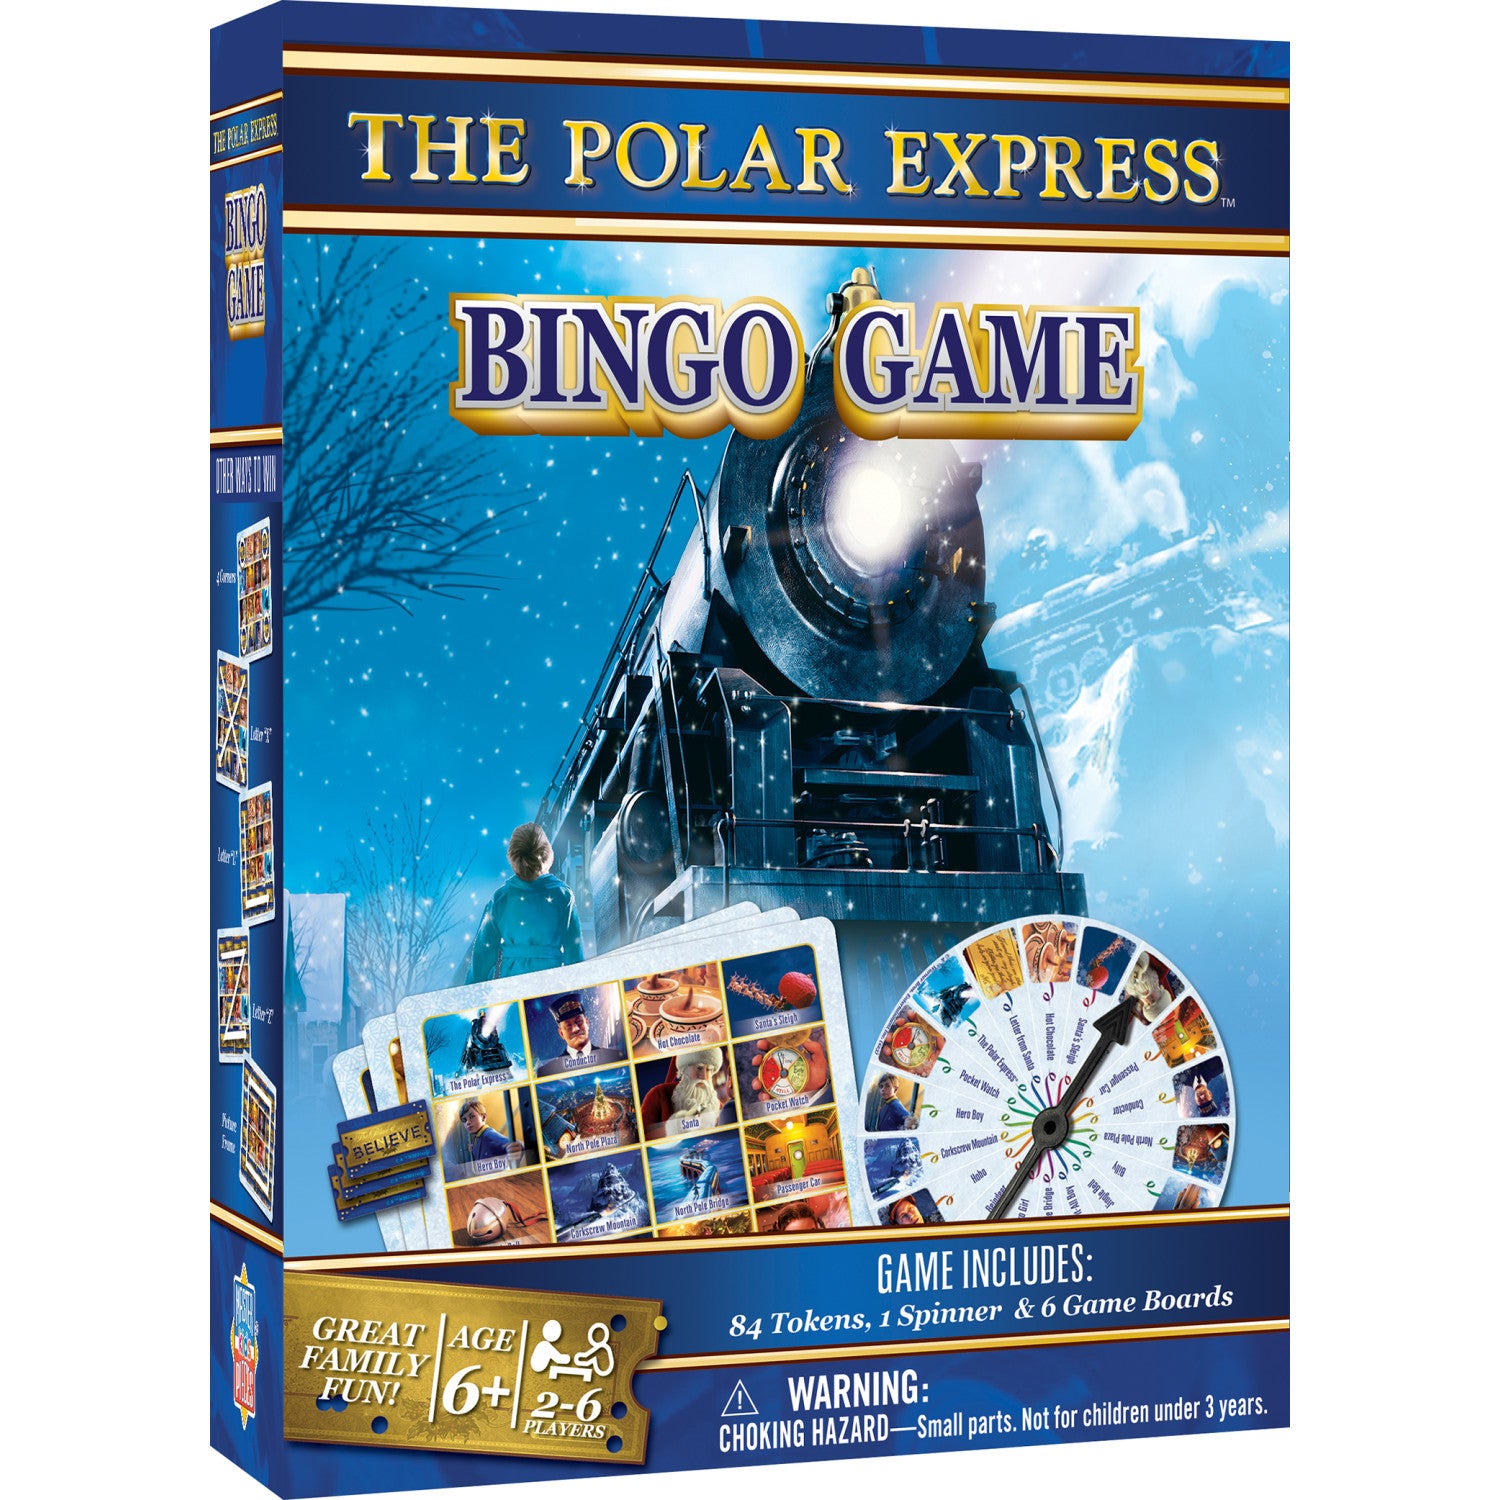 The Polar Express Bingo Game